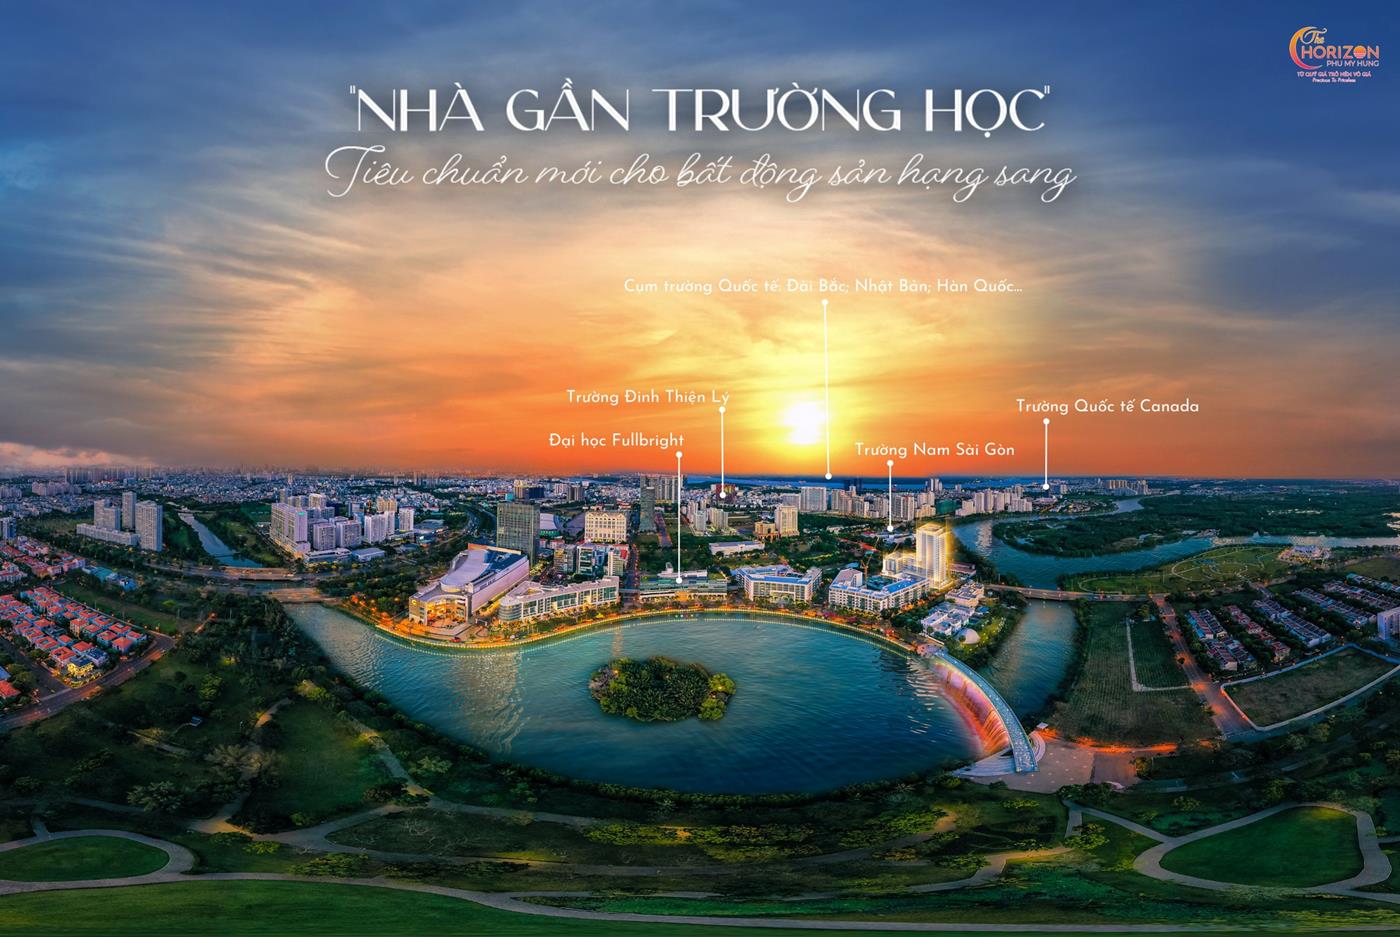 The Horizon Phú Mỹ Hưng